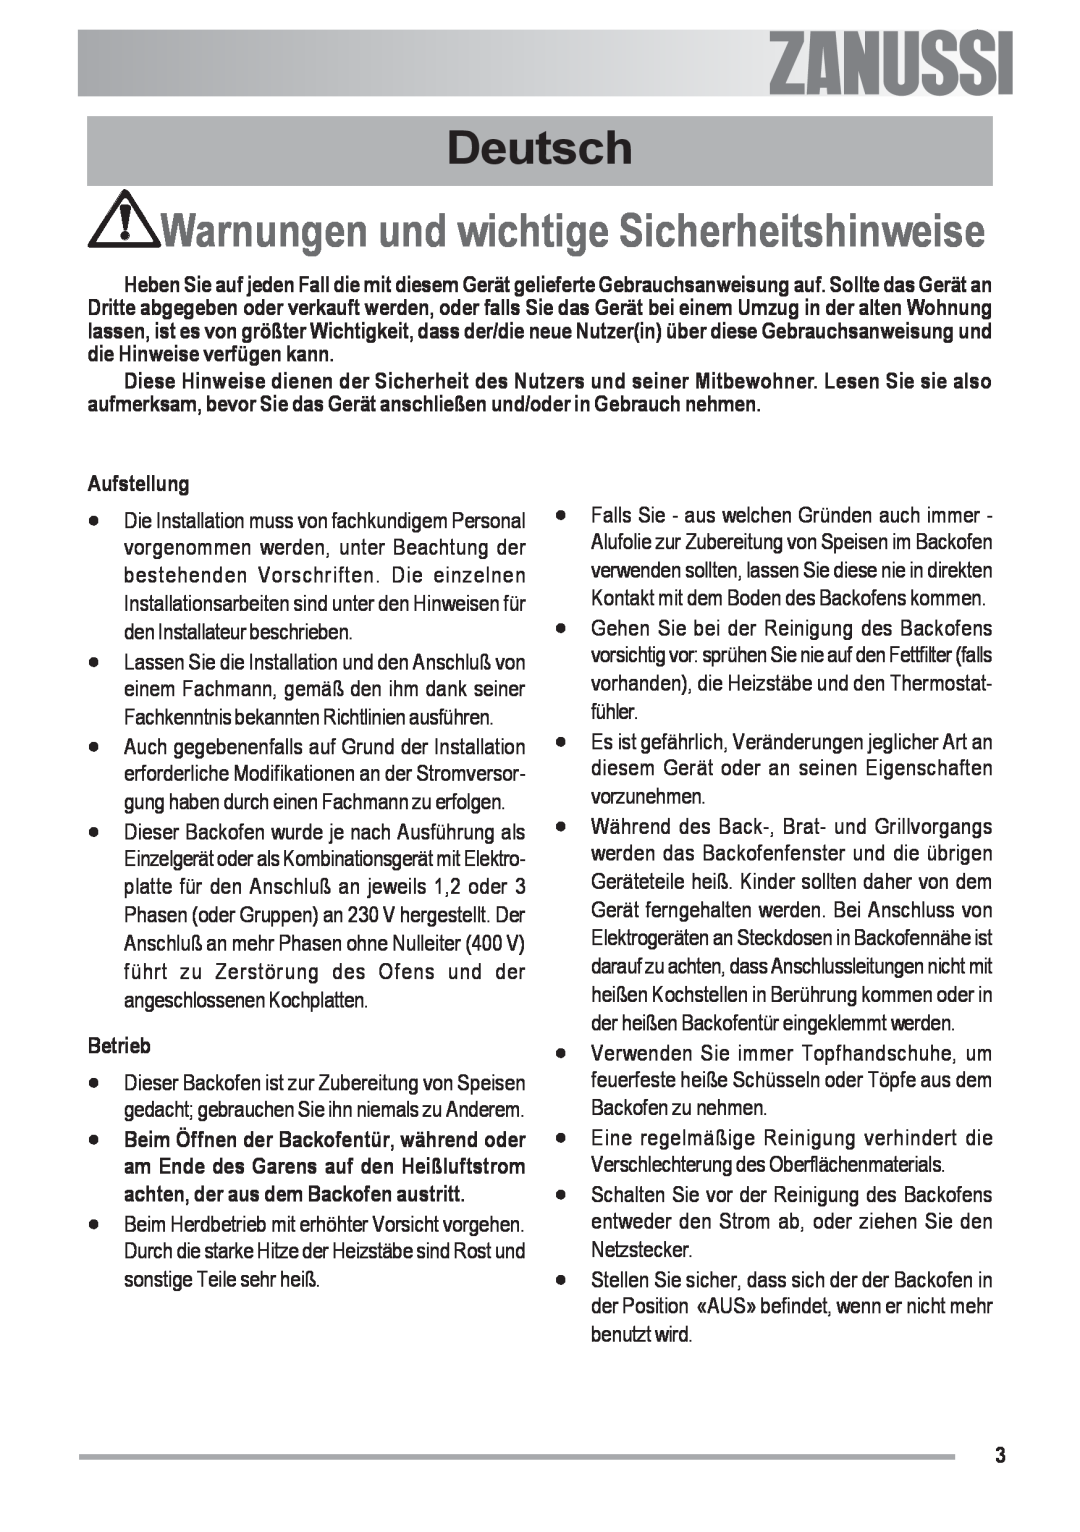 Zanussi ZOU 592 user manual Deutsch, Warnungen und wichtige Sicherheitshinweise, Aufstellung, Betrieb 